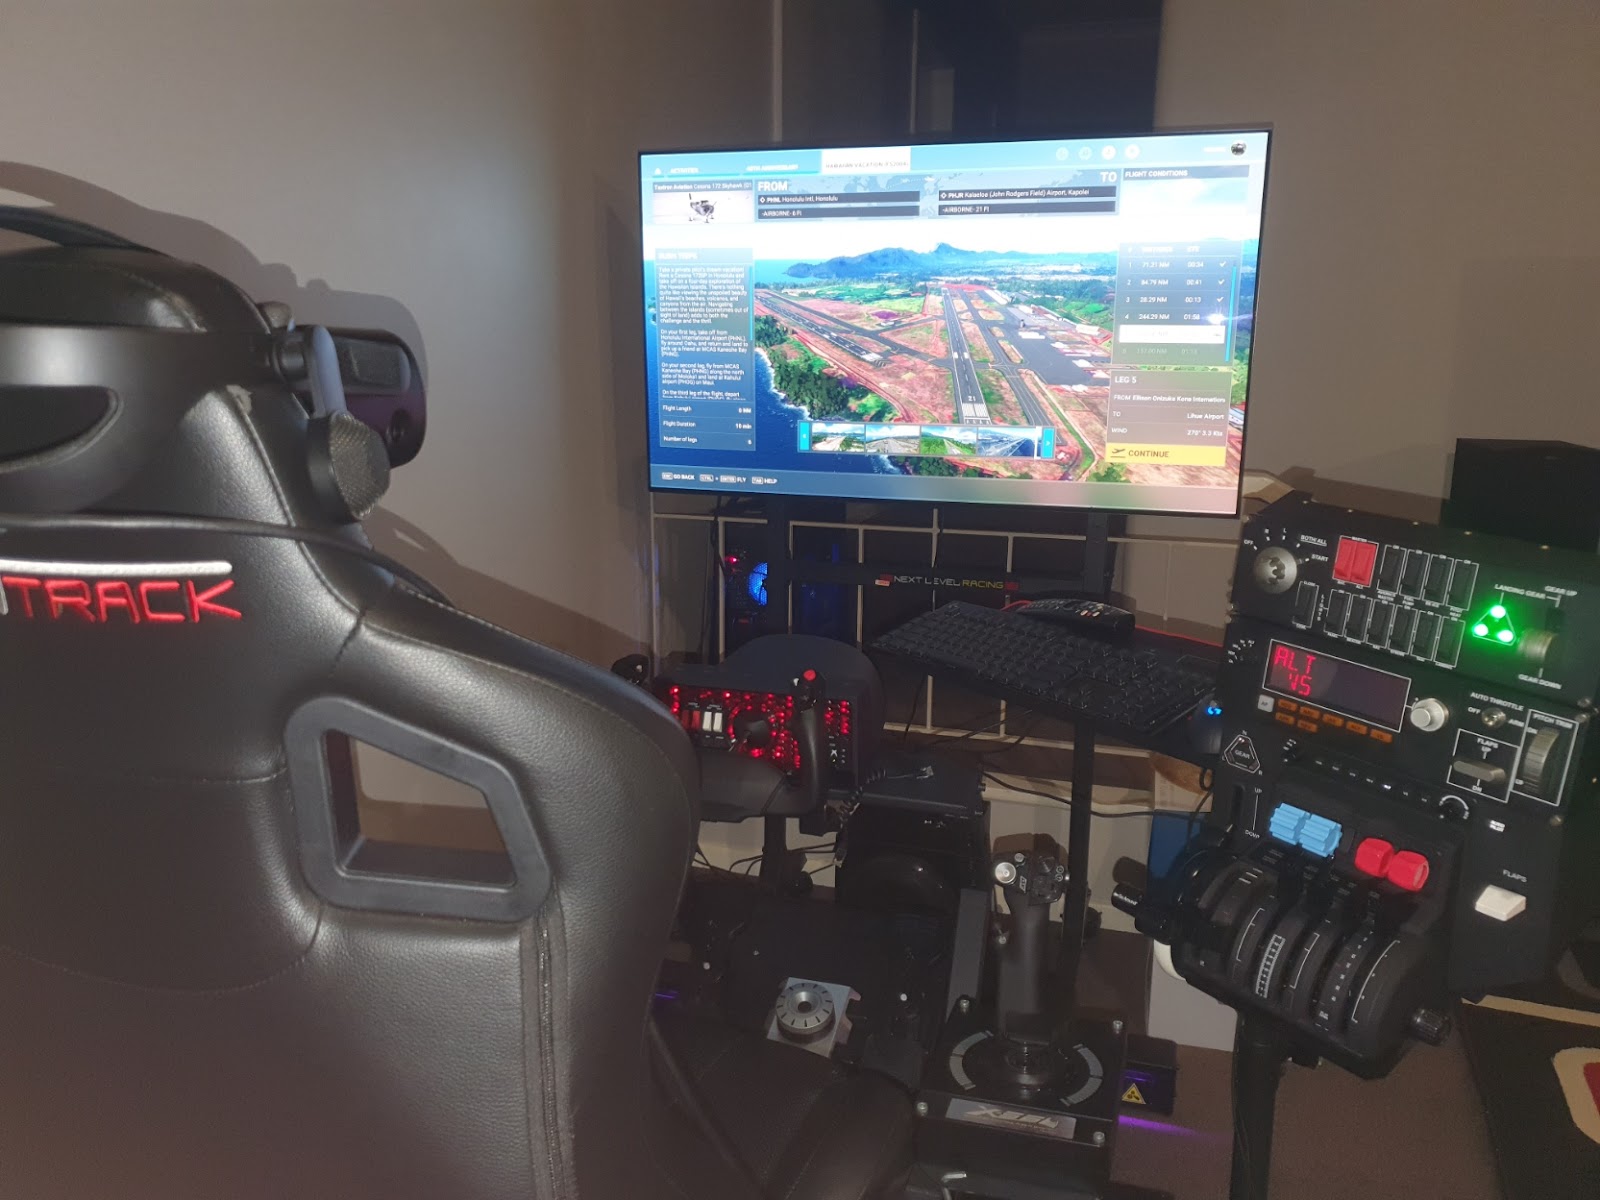 Logitech/Saitek Flight Panel PC Compatibility (Motion Cockpit)